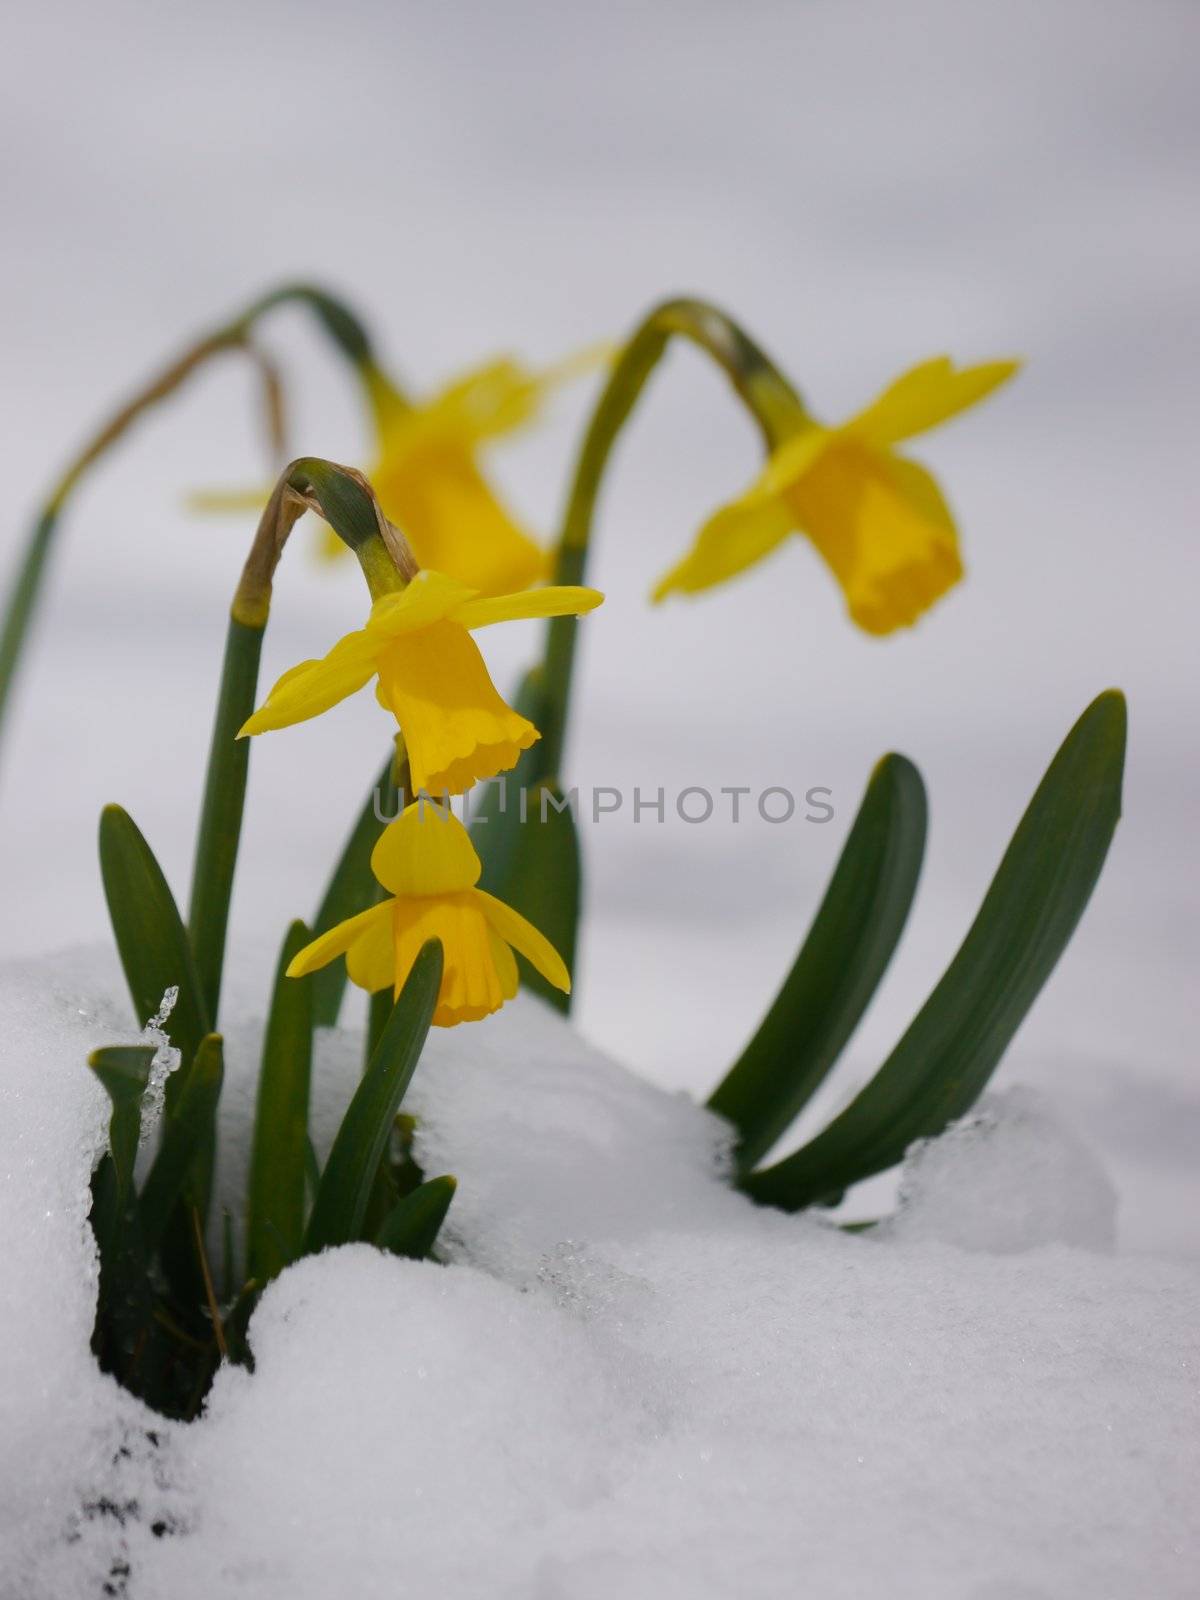 daffodils by yucas